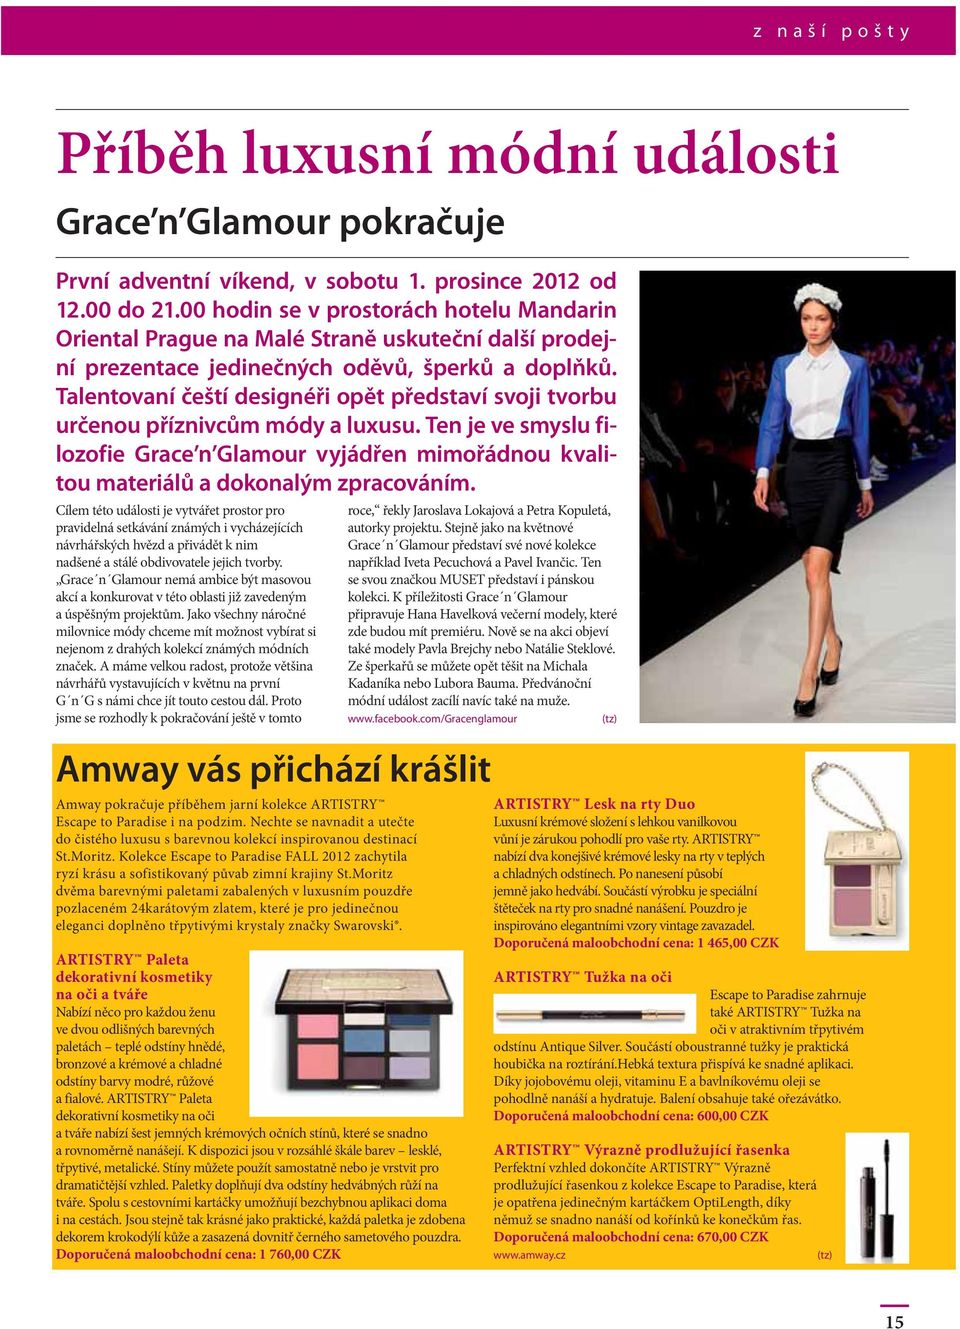 Talentovaní čeští designéři opět představí svoji tvorbu určenou příznivcům módy a luxusu. Ten je ve smyslu filozofie Grace n Glamour vyjádřen mimořádnou kvalitou materiálů a dokonalým zpracováním.